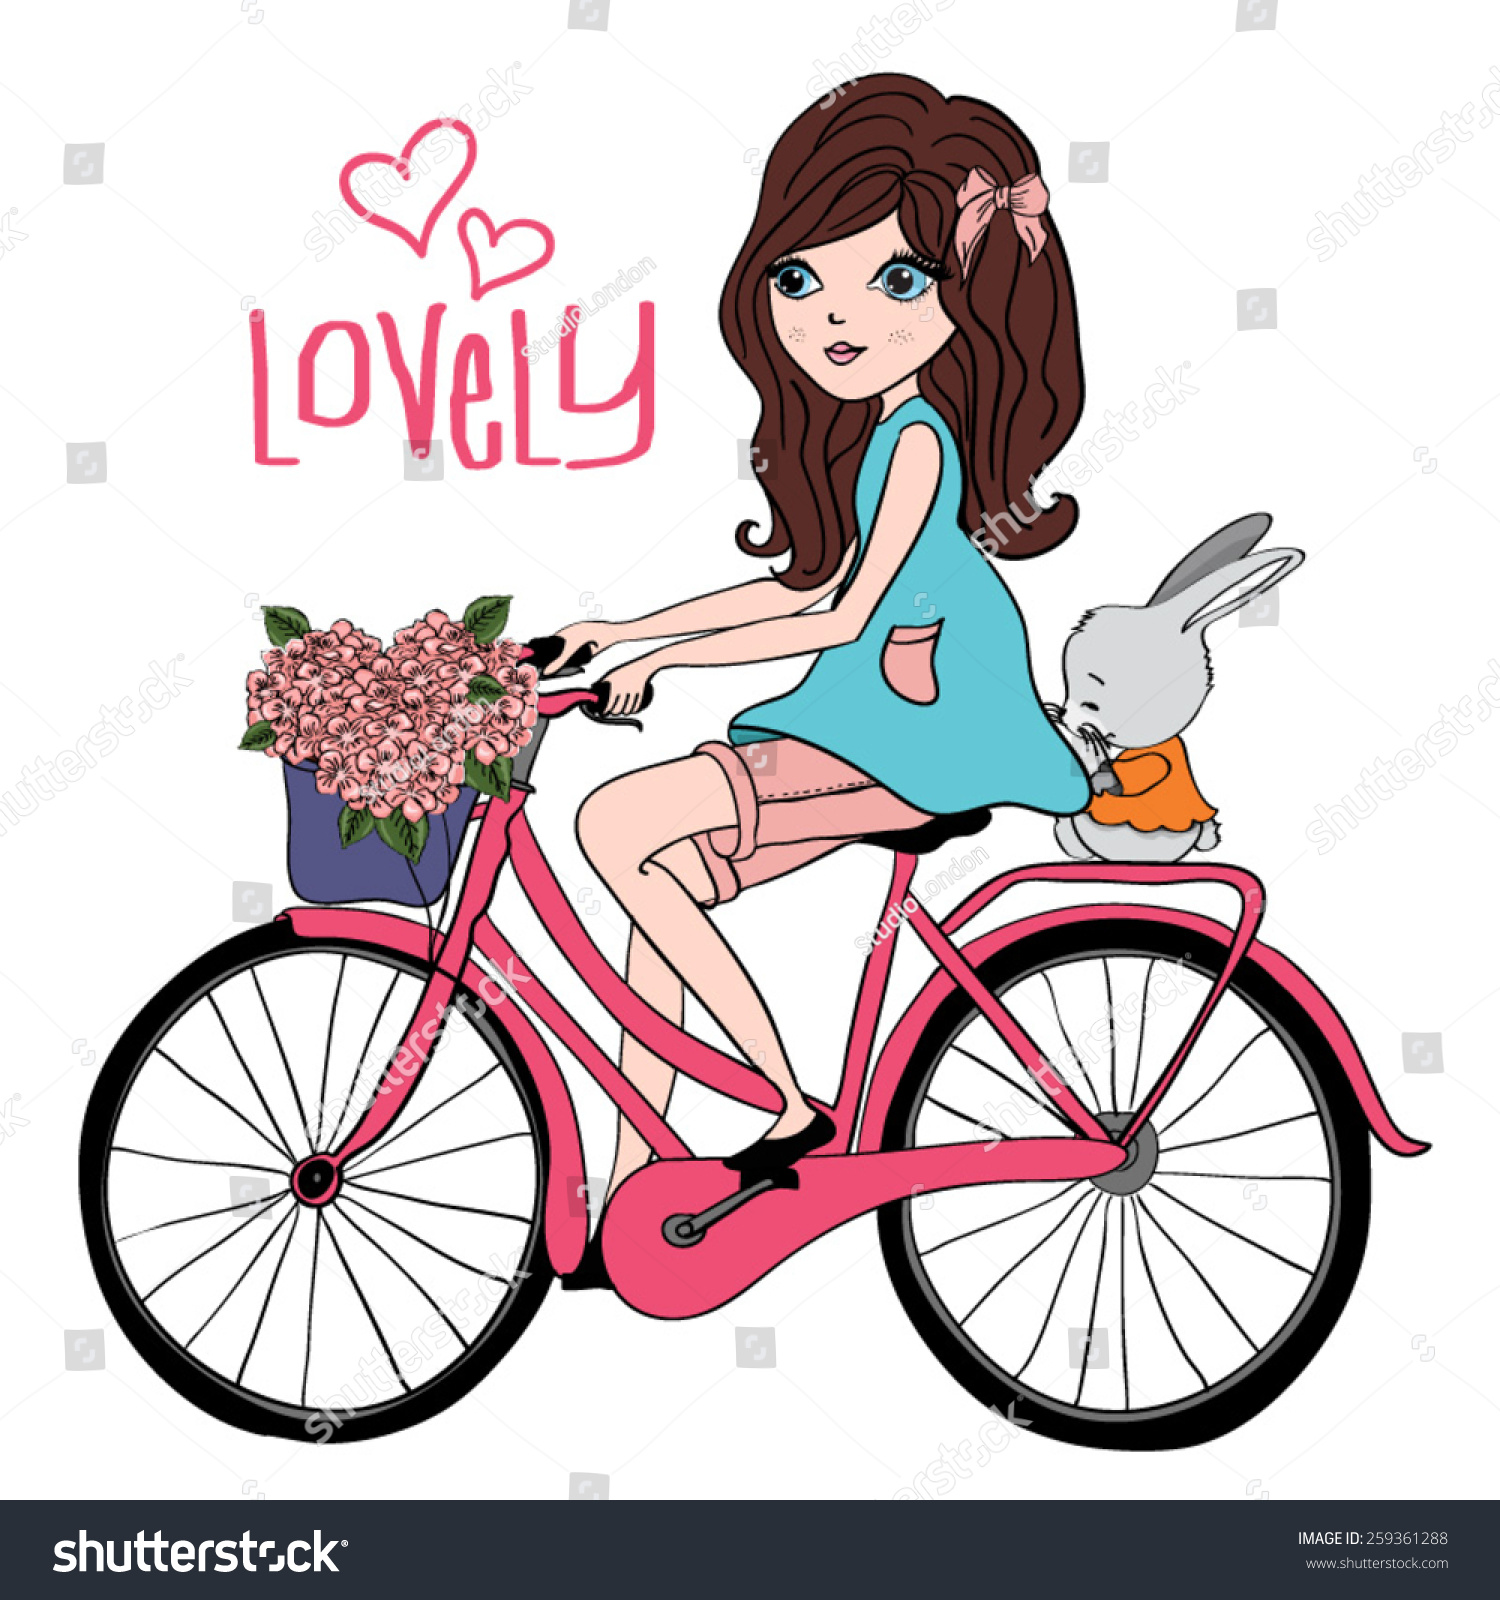 girl on a bike clipart - photo #27